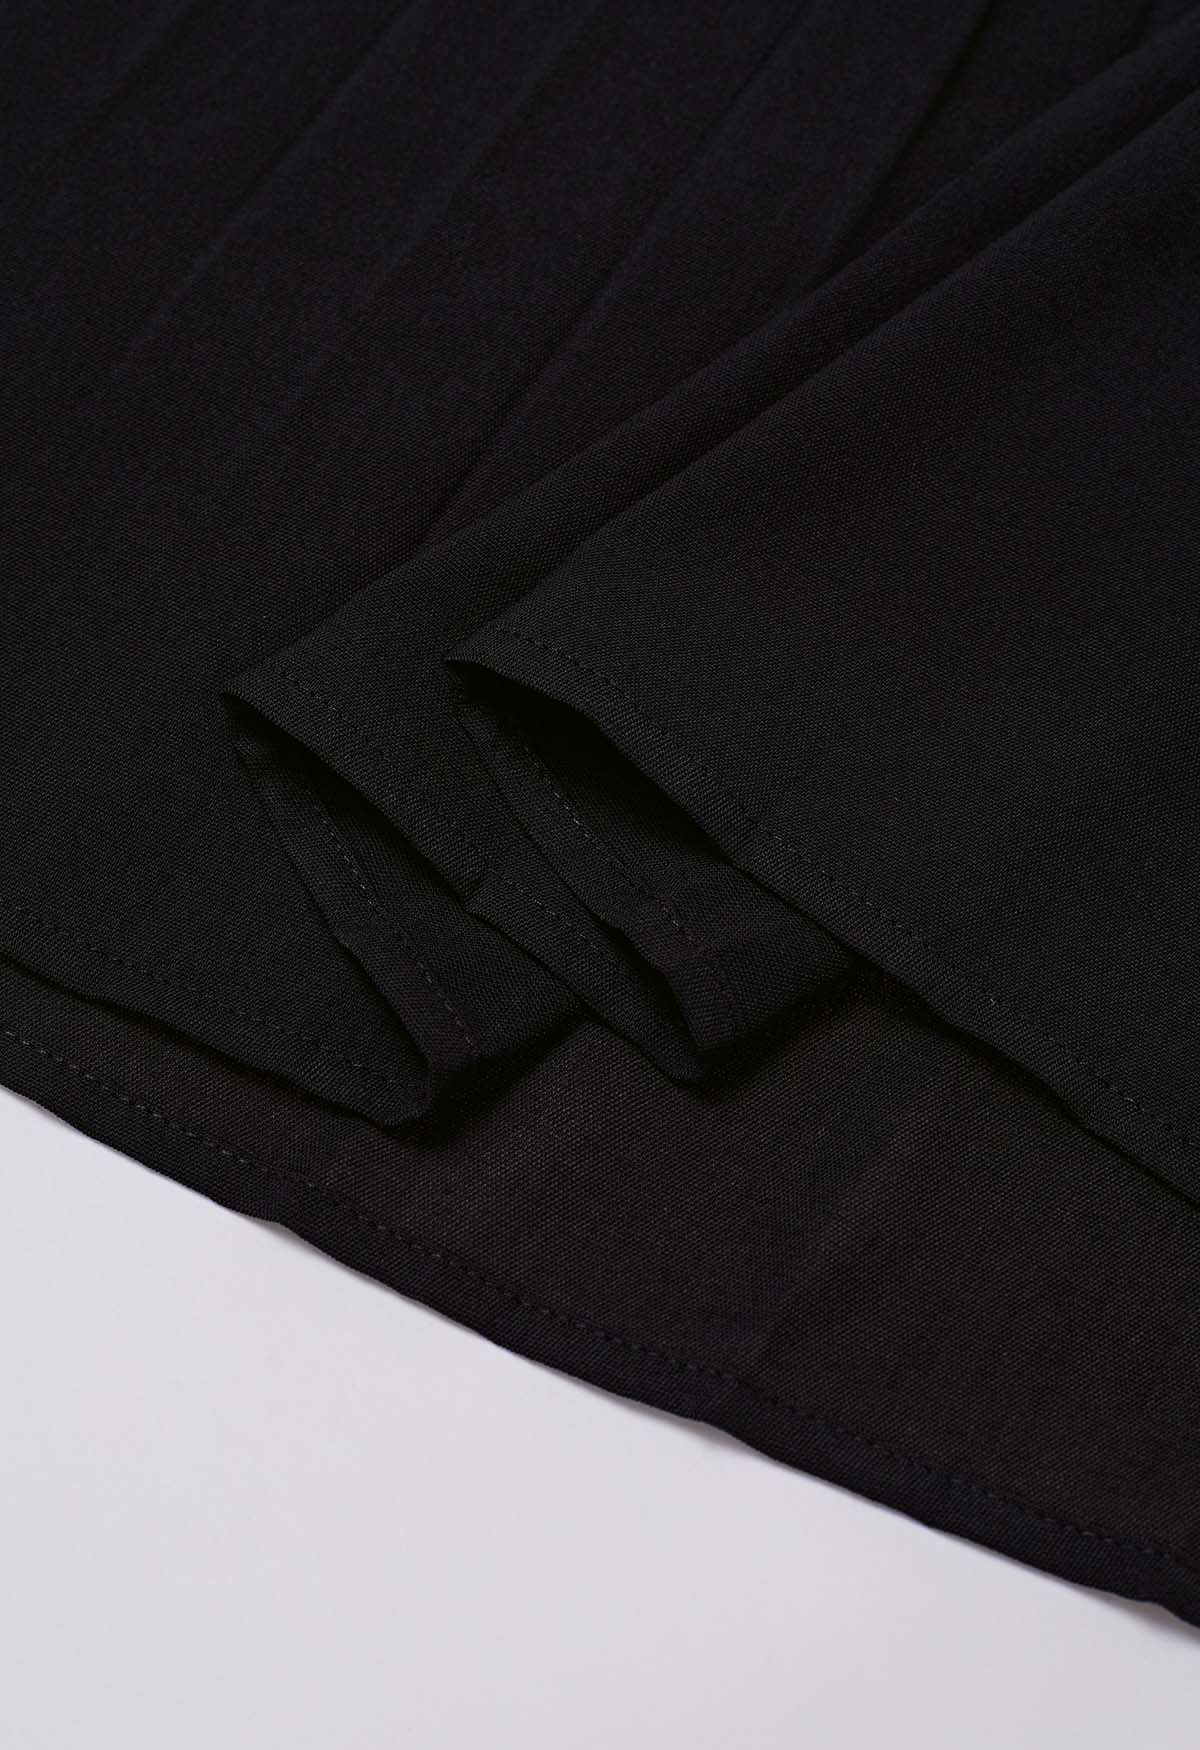 Schwarzes, plissiertes Kleid mit V-Ausschnitt und verdrehter Vorderseite